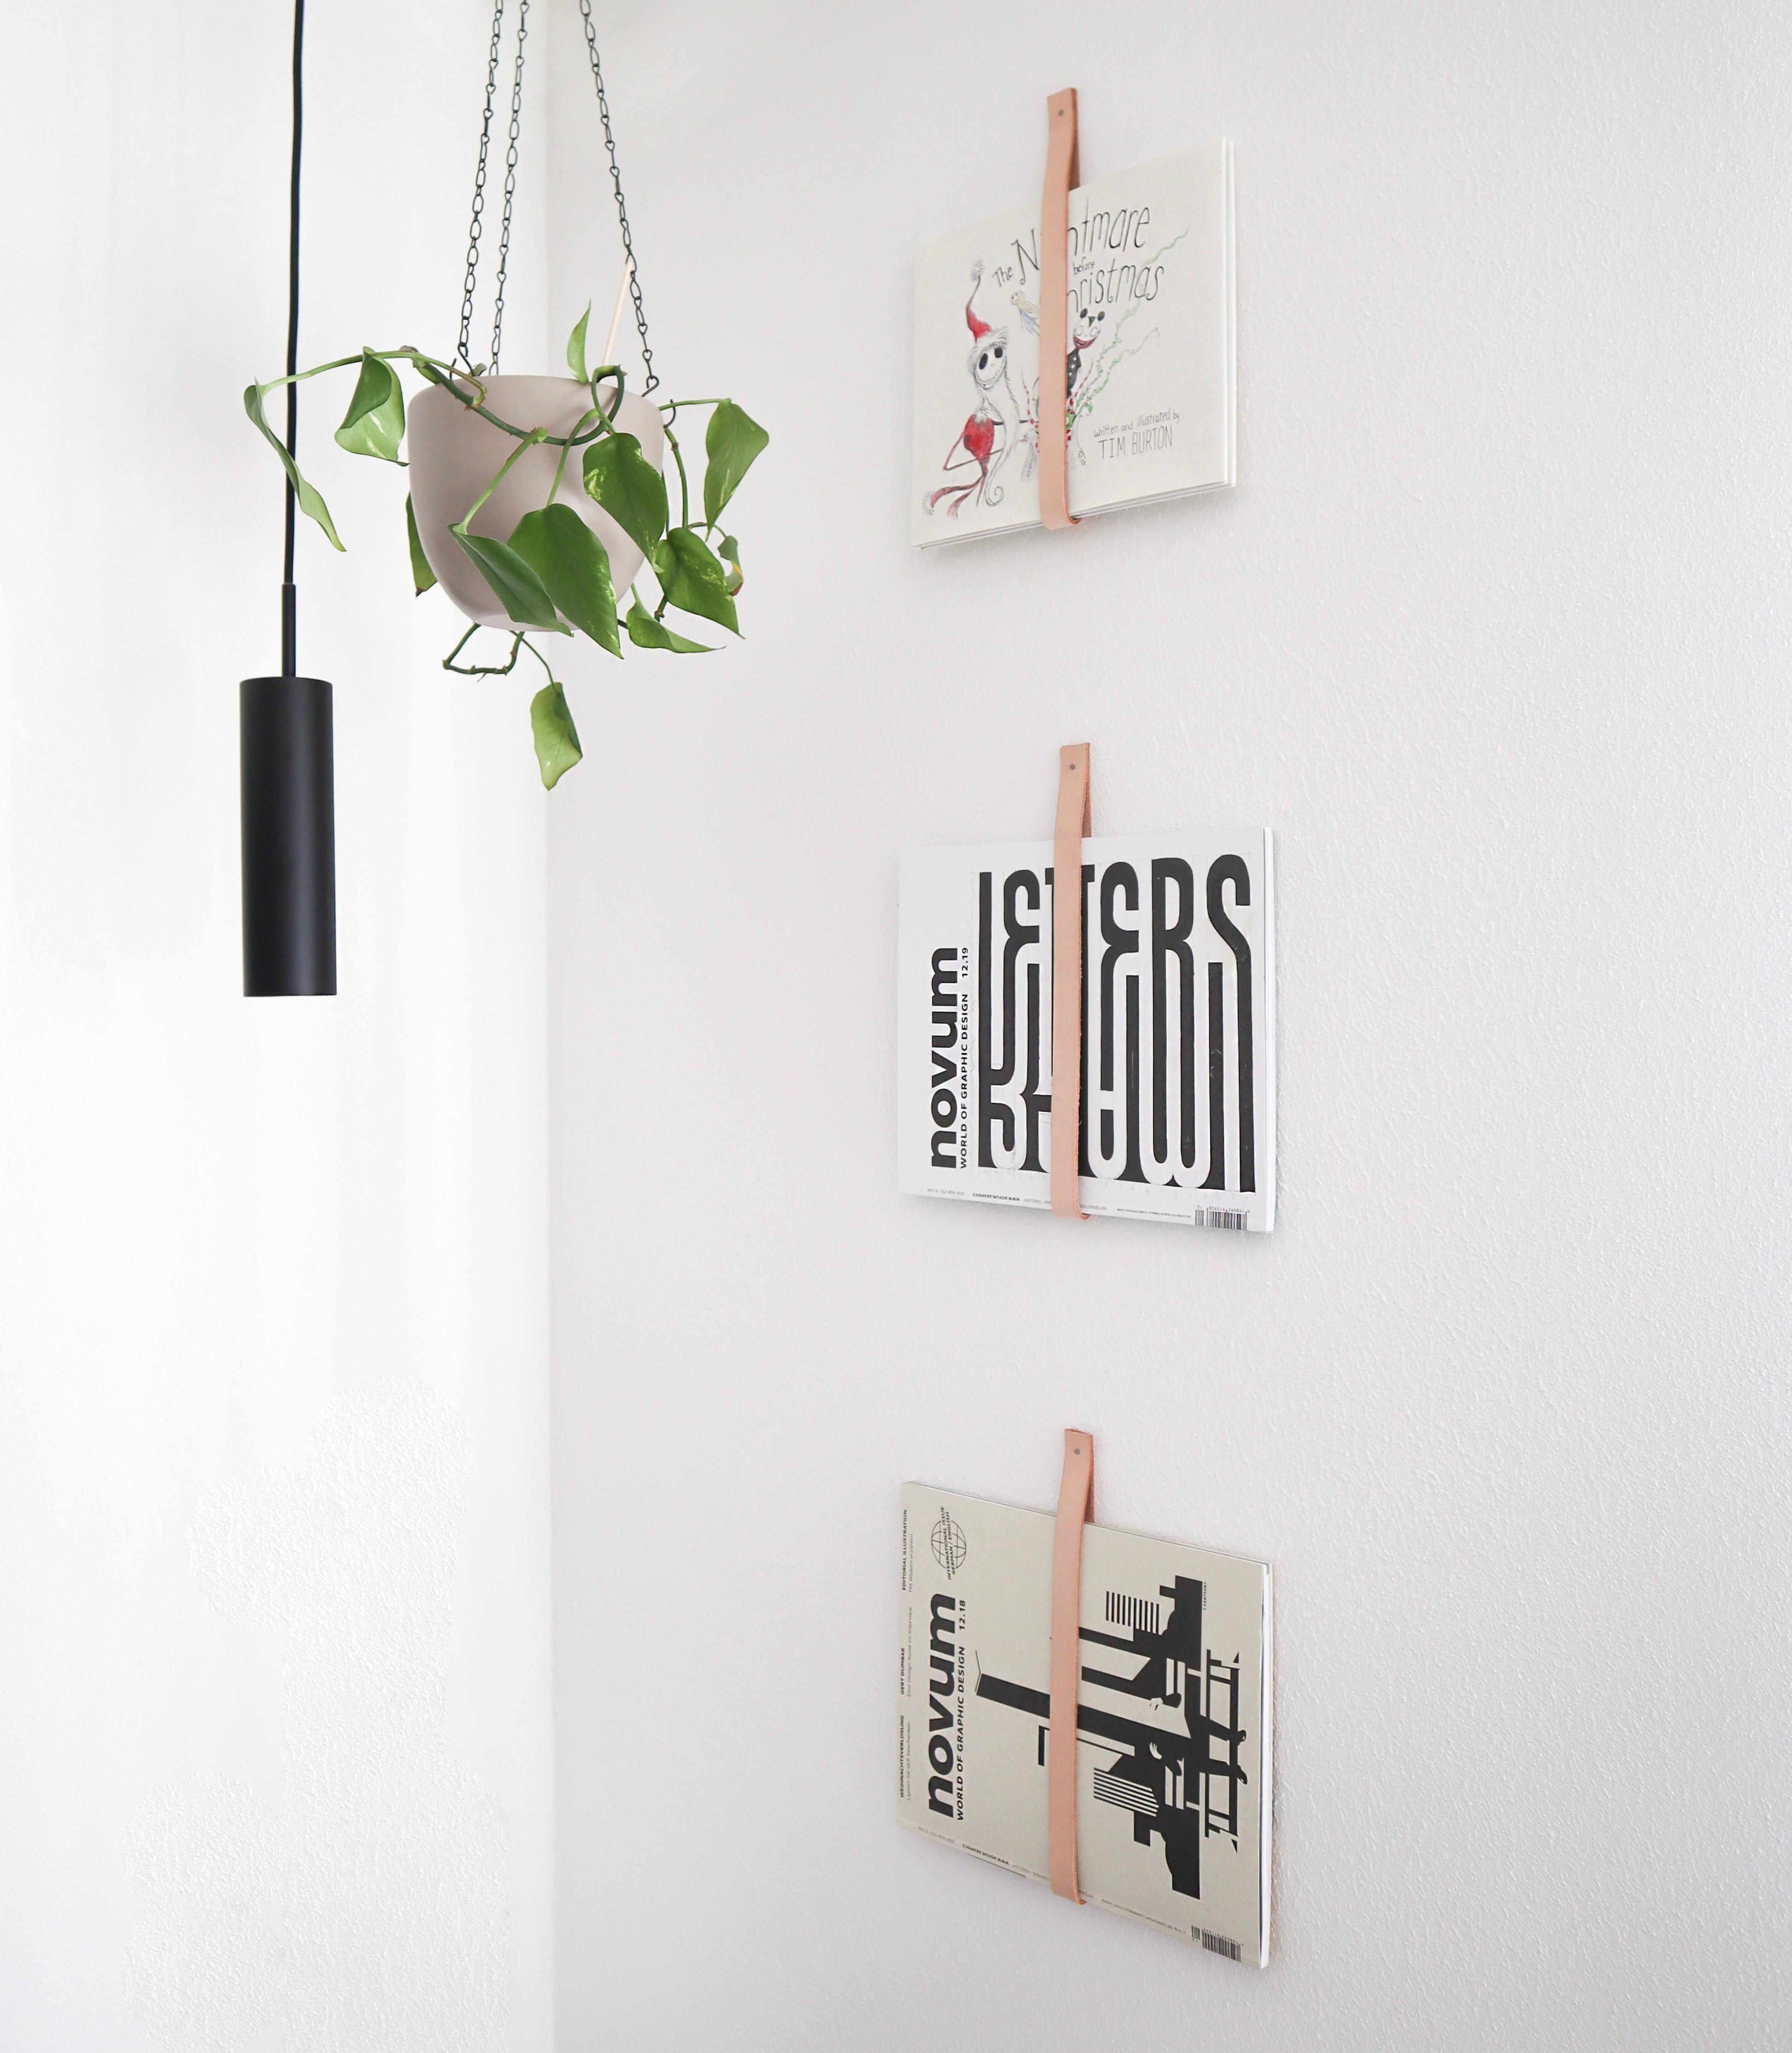 Unser #Wohnzimmer schmücken DIY-Magazinhalter. Die Hefte wechseln wir nach Lust und Laune aus #diy #magazin #handmade